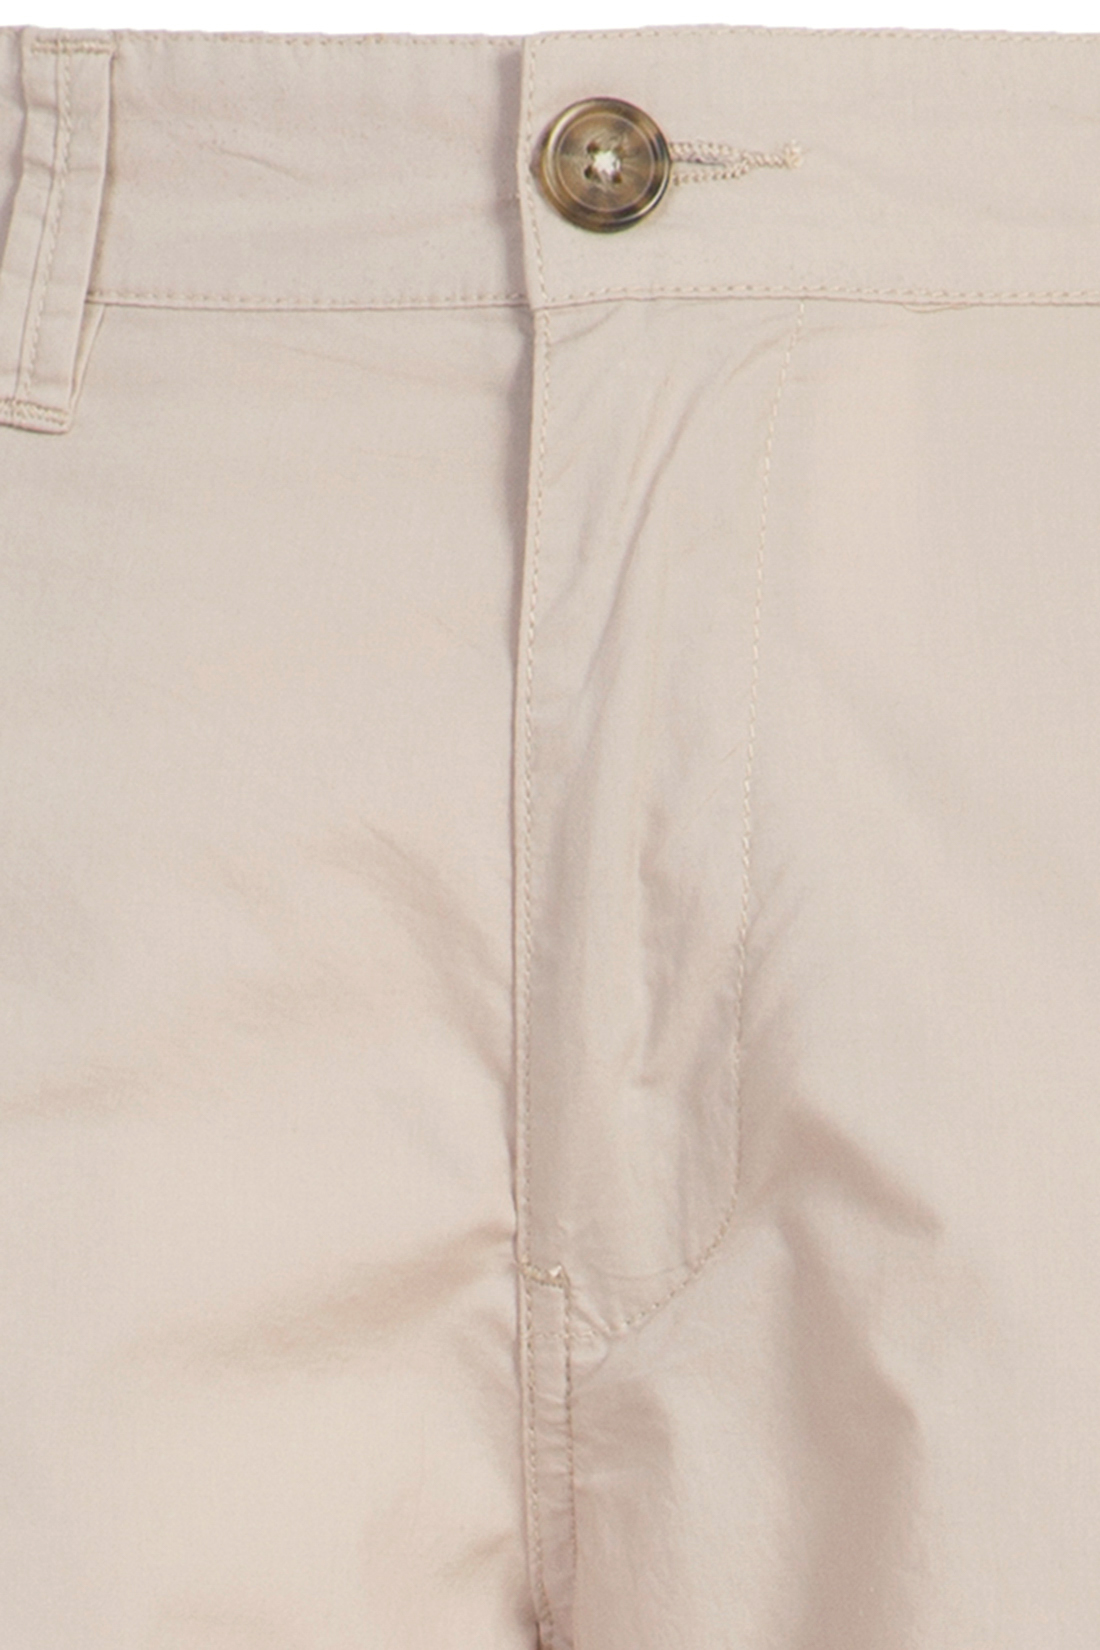 Повседневные брюки из хлопка (арт. baon B797014), размер M, цвет бежевый Повседневные брюки из хлопка (арт. baon B797014) - фото 3